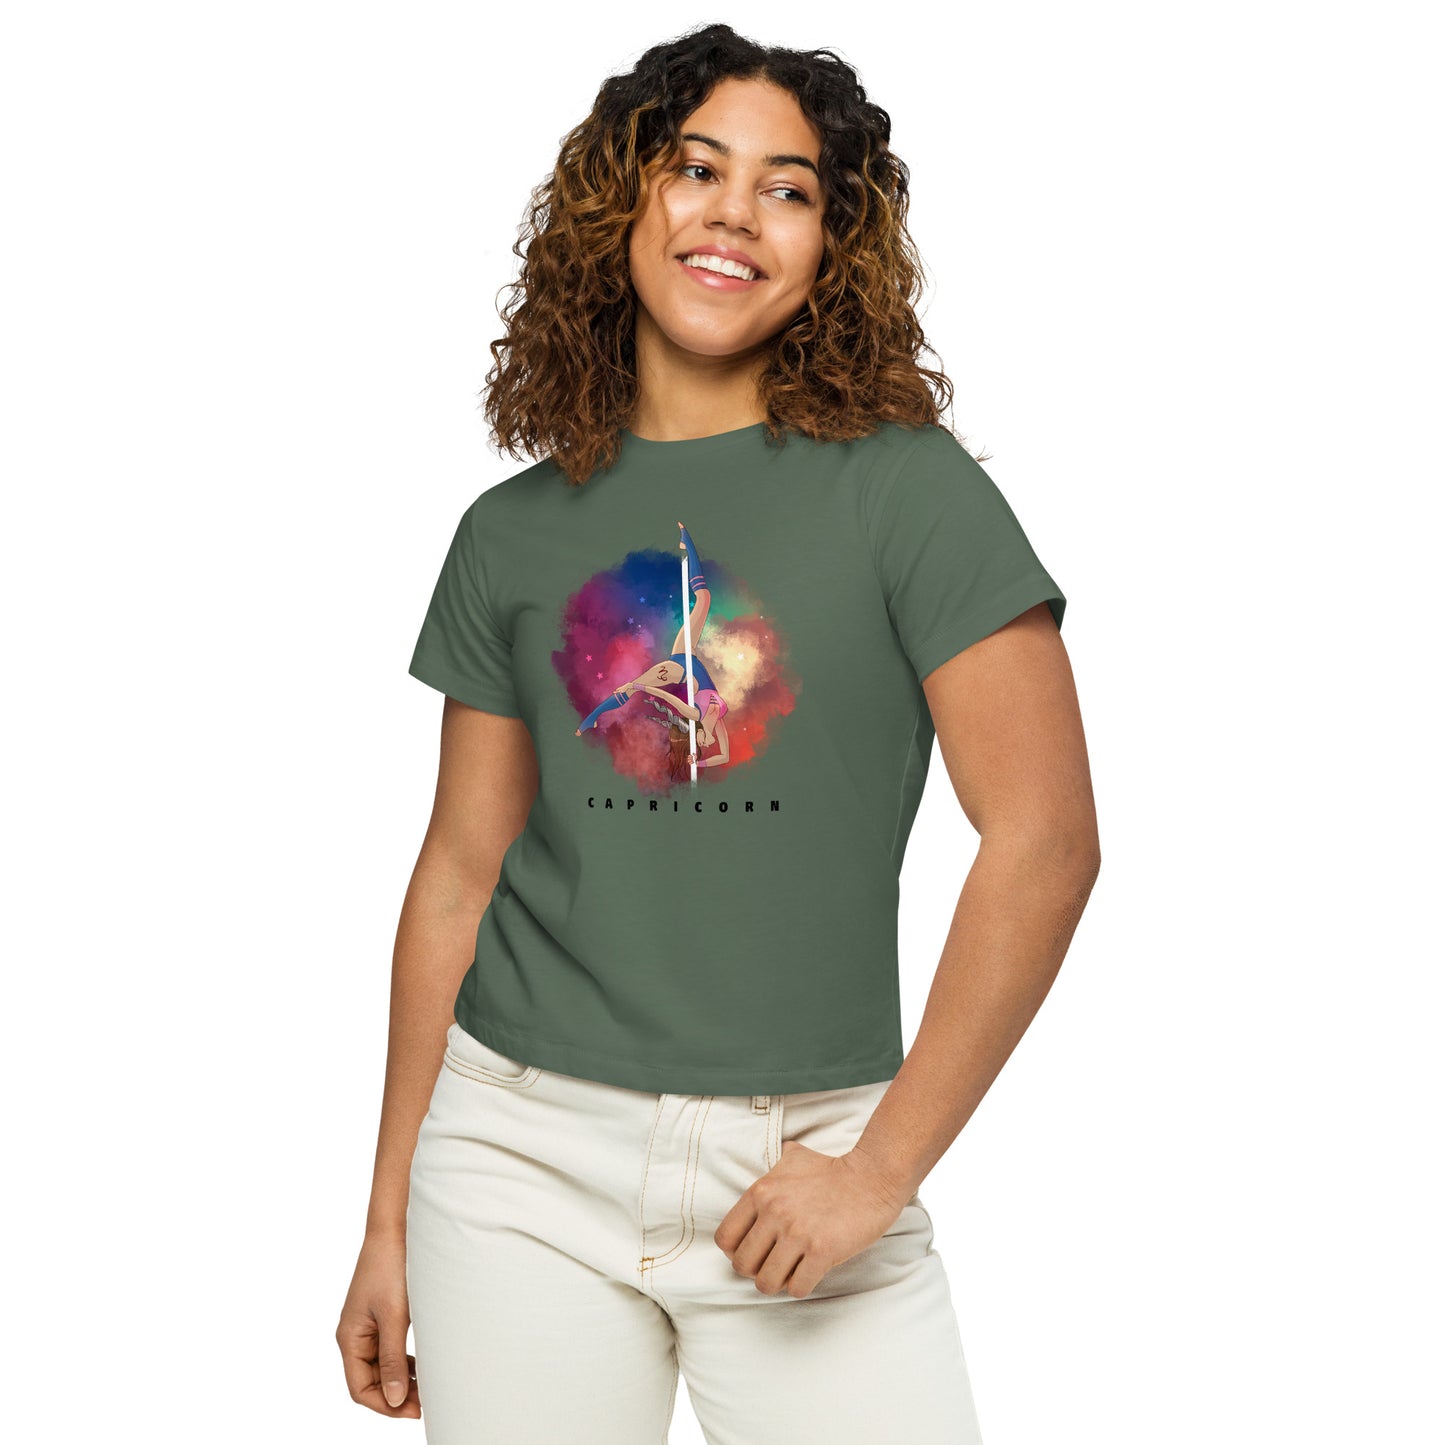 Capricorn - Women’s high-waisted t-shirt